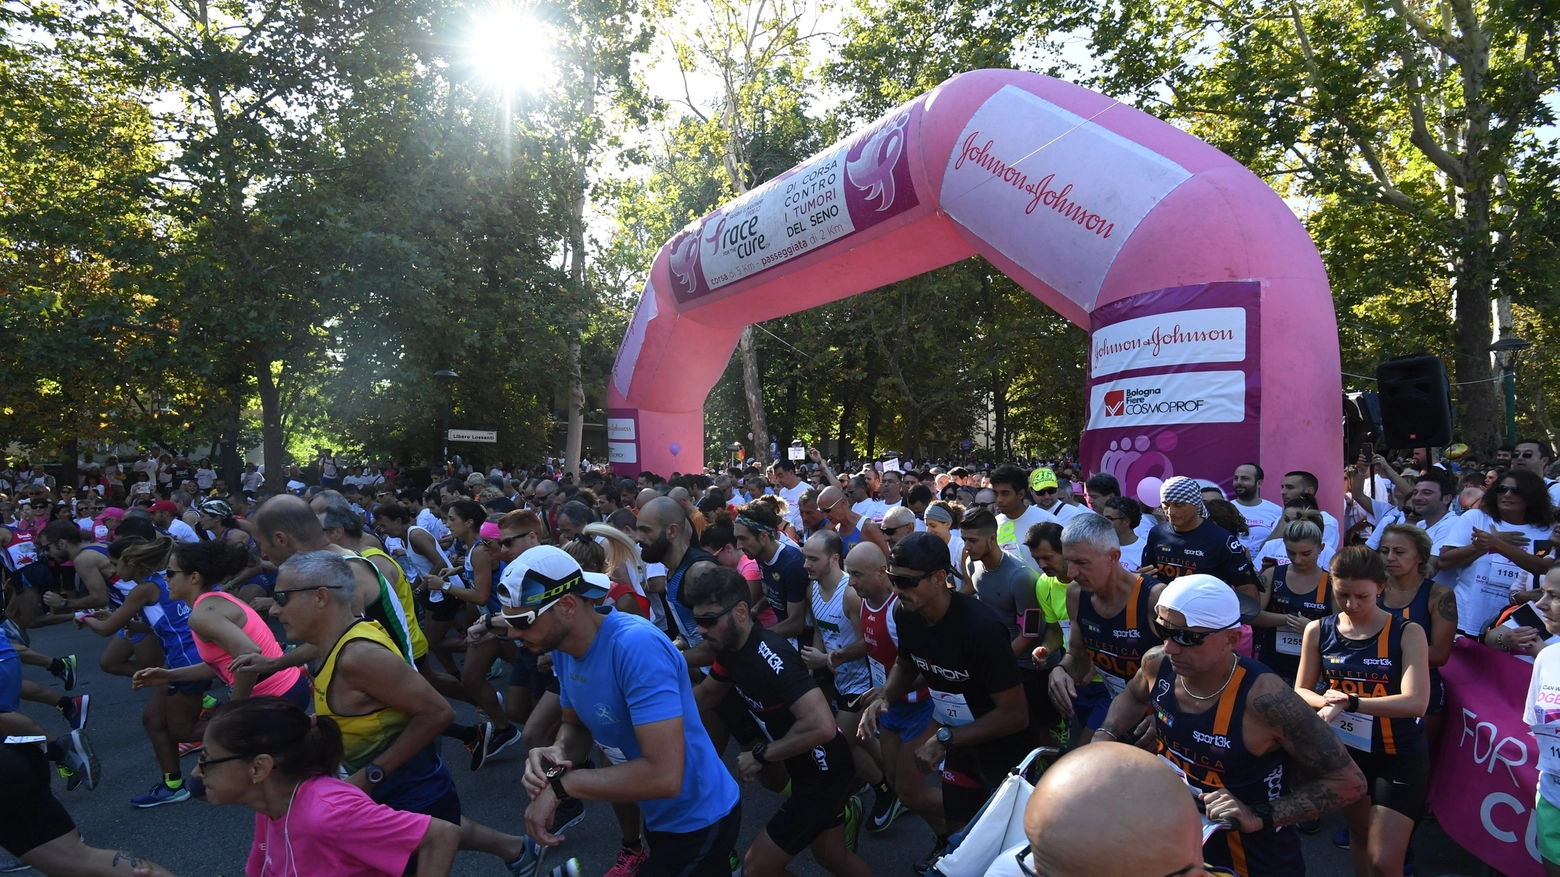 Race for the cure, la corsa torna a Bologna domenica 22 settembre 2019 (FotoSchicchi)